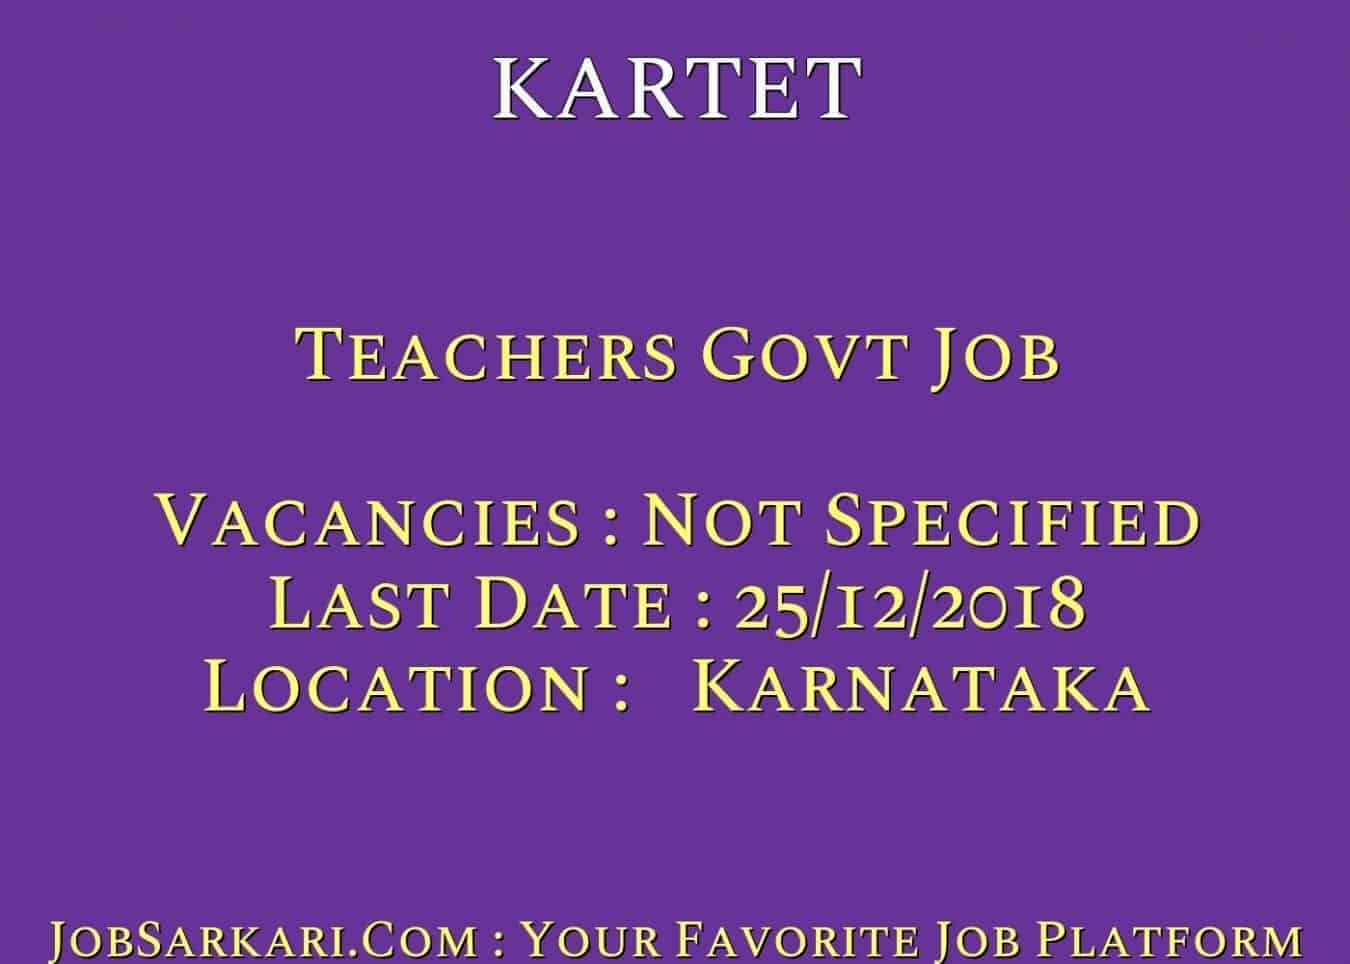 KARTET Recruitment 2018 For Teachers Govt Job